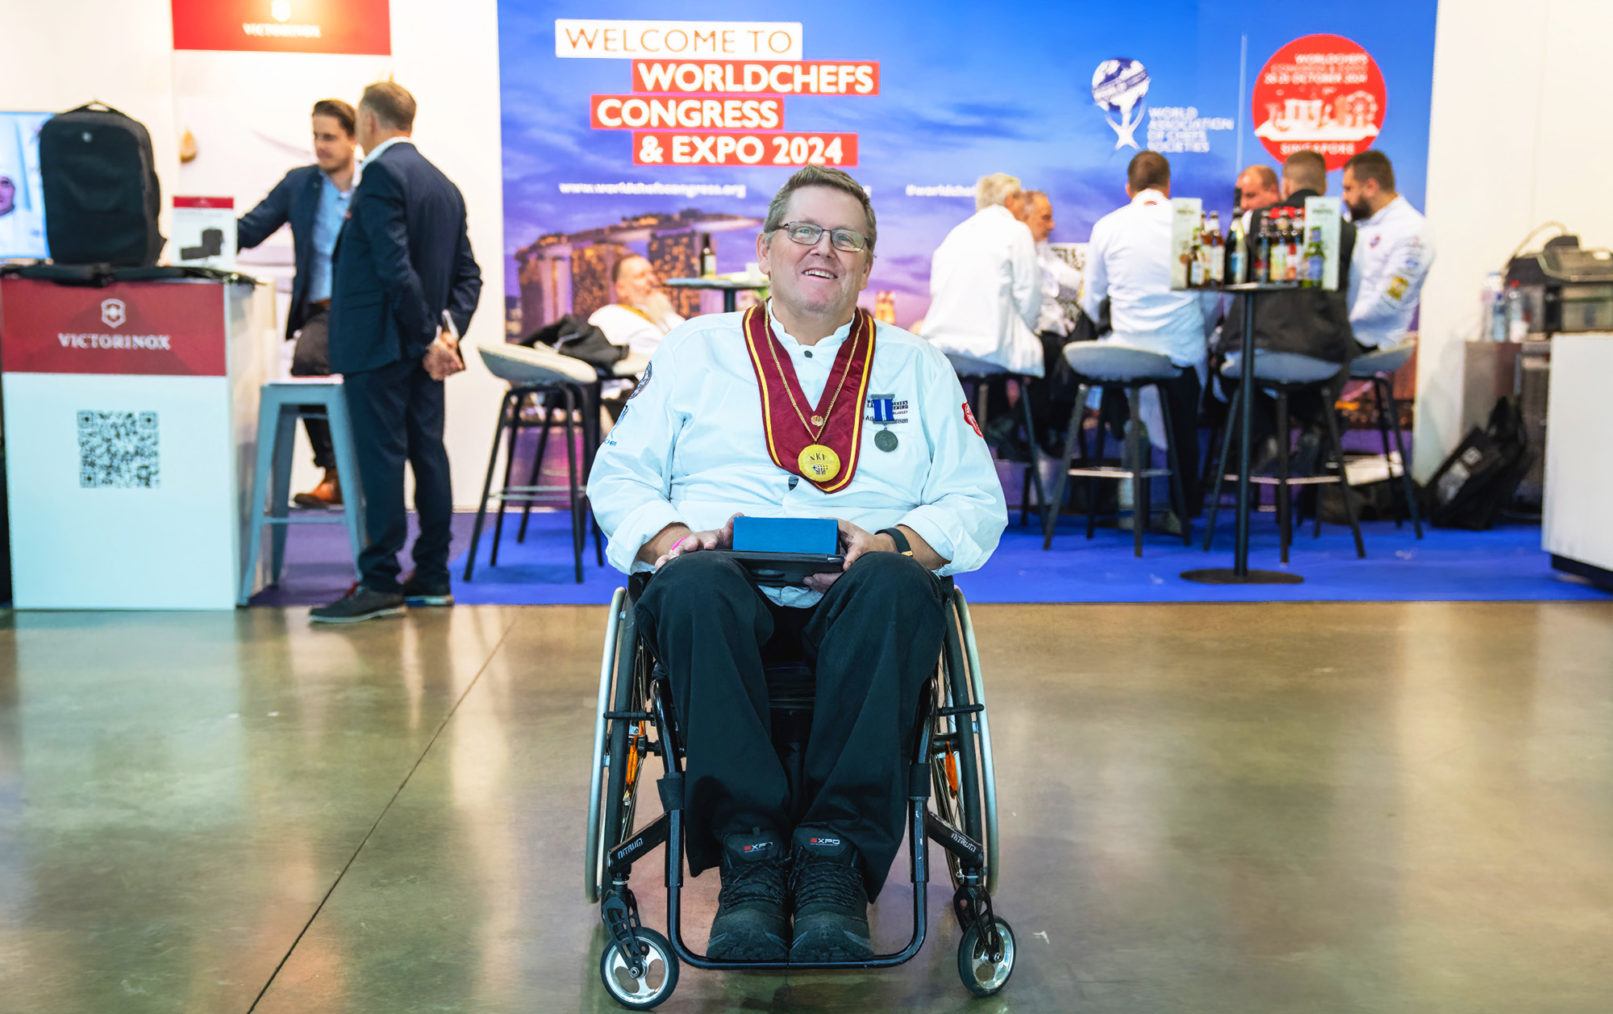 Tom Atle Steffensen poserer i rullestol med prisen foran en stand med World Chefs-plakat.